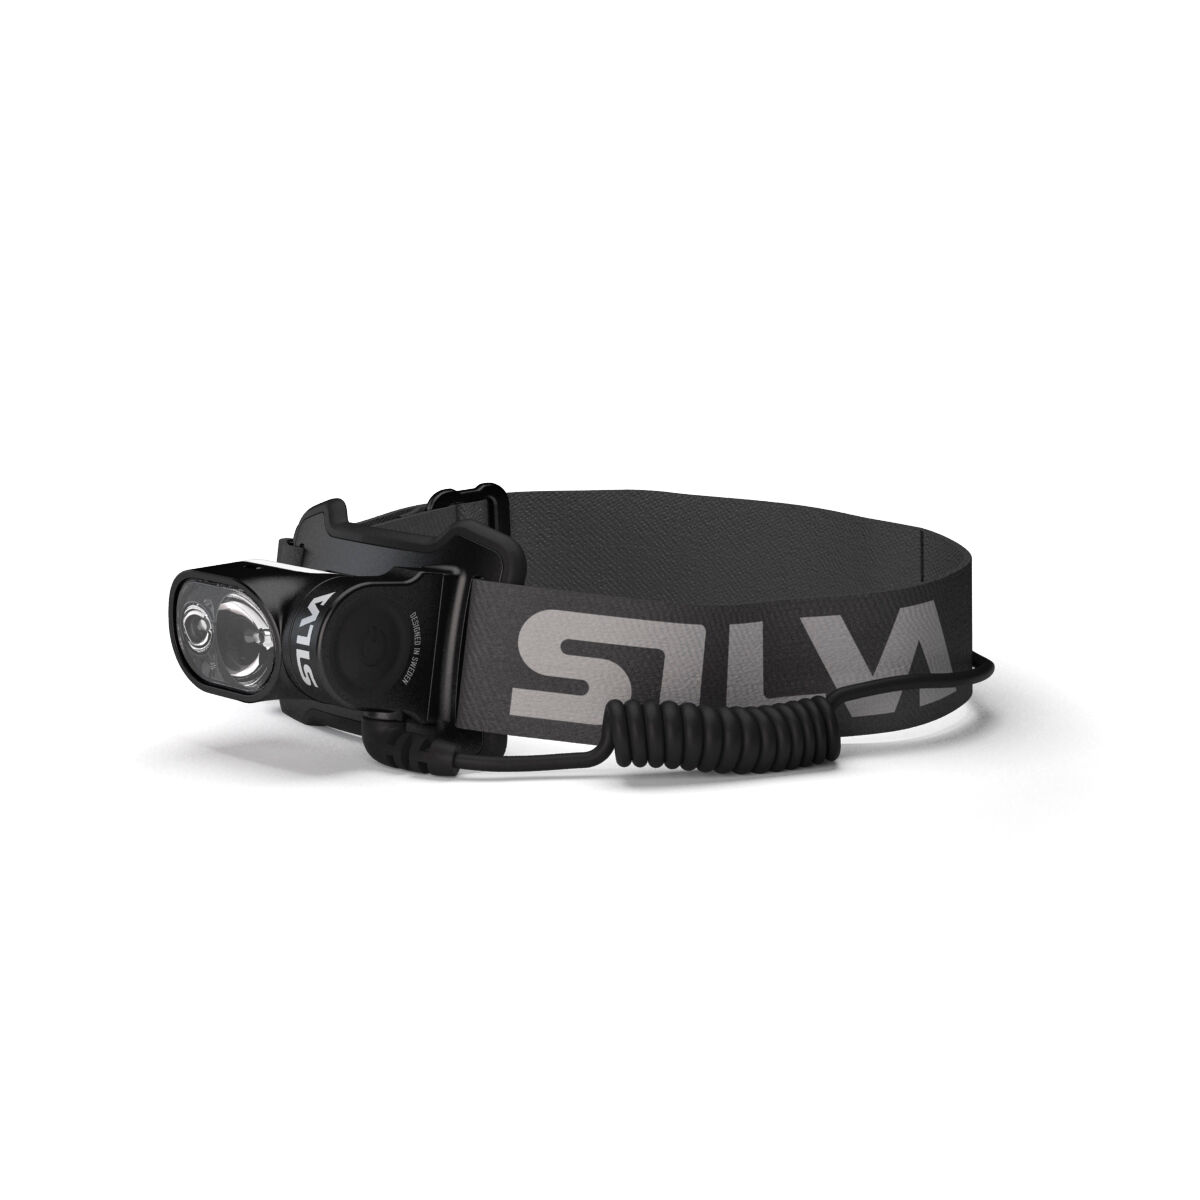 Silva Cross Trail 6X - Headlamp